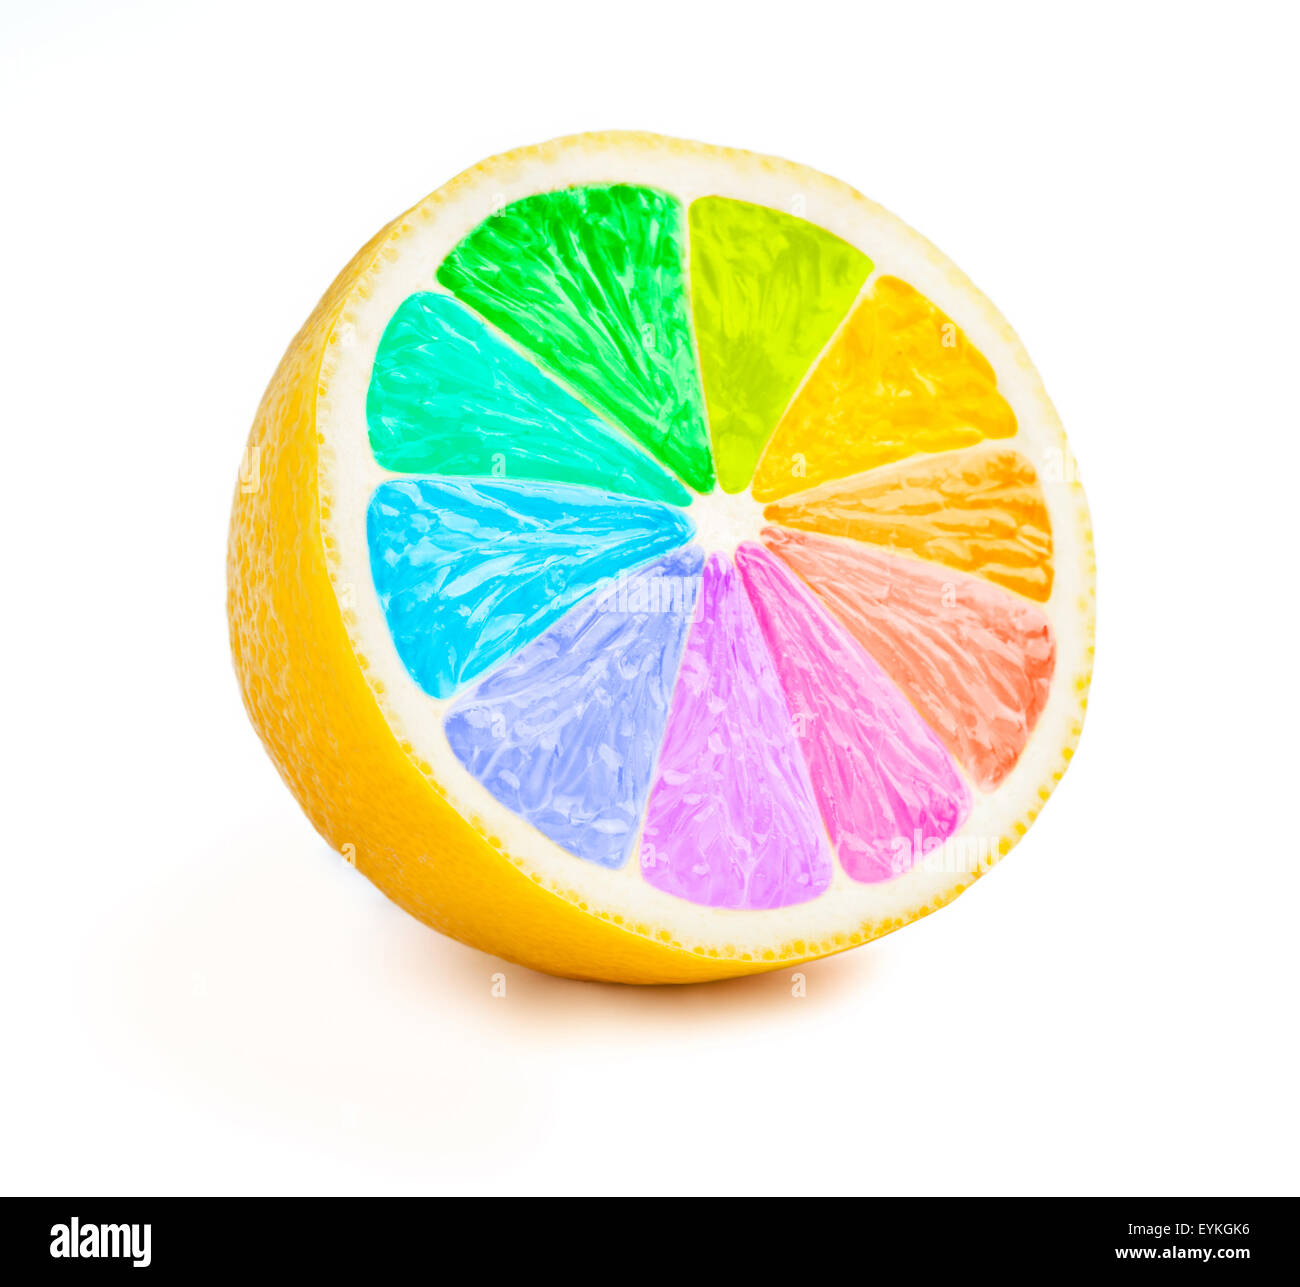 Zitrone schneiden eine halbe Scheibe mit Farbe Rad Regenbogenfarben isoliert auf weißem Hintergrund Stockfoto